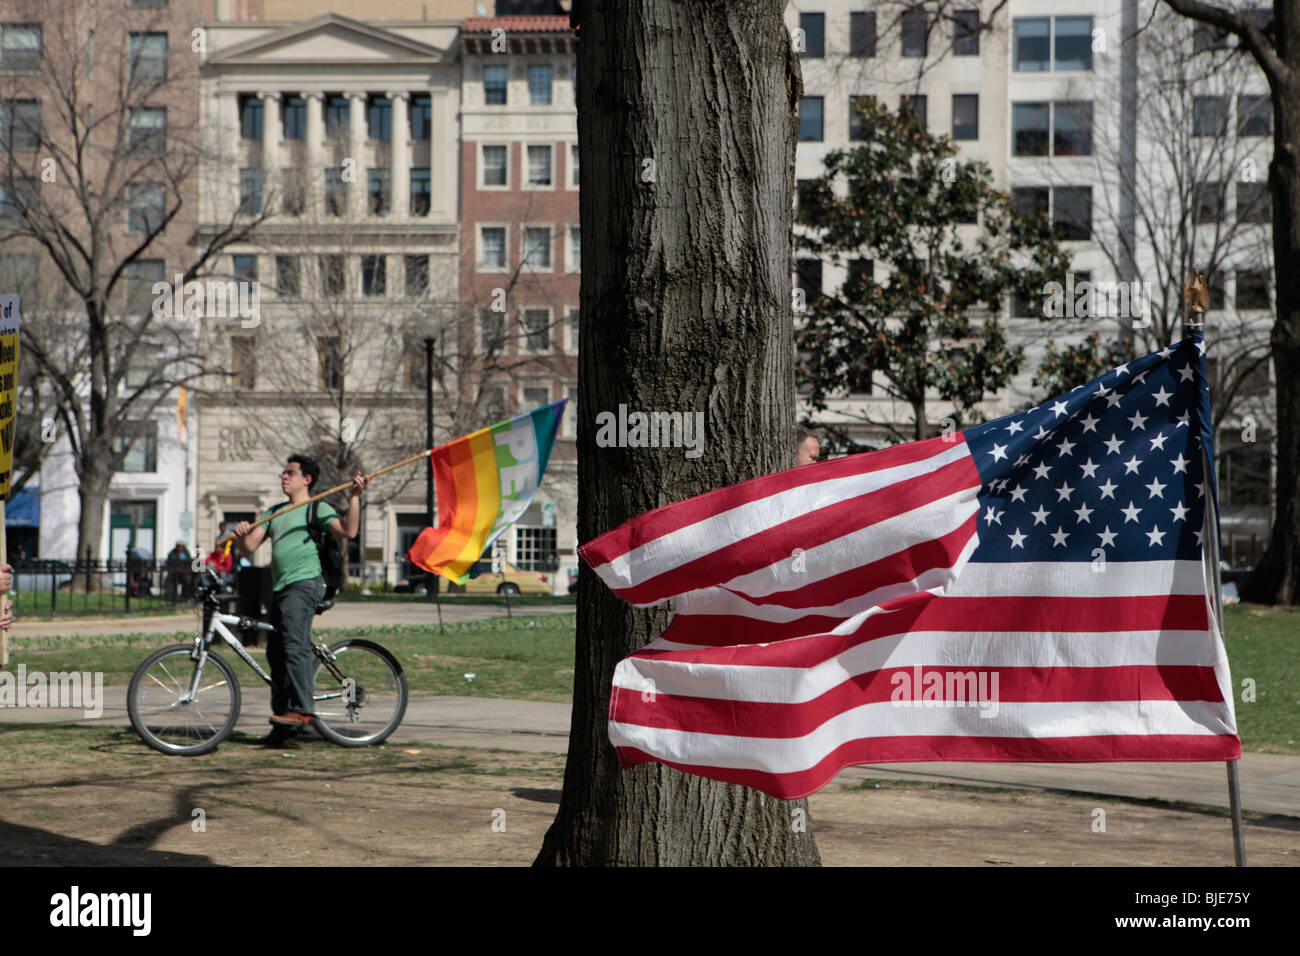 Drapeau américain et un drapeau de la paix dans la région de Lafayette Park, près de maison blanche. Manifestation anti-guerre. Marche sur Washington. 20 mars, 2010 Banque D'Images